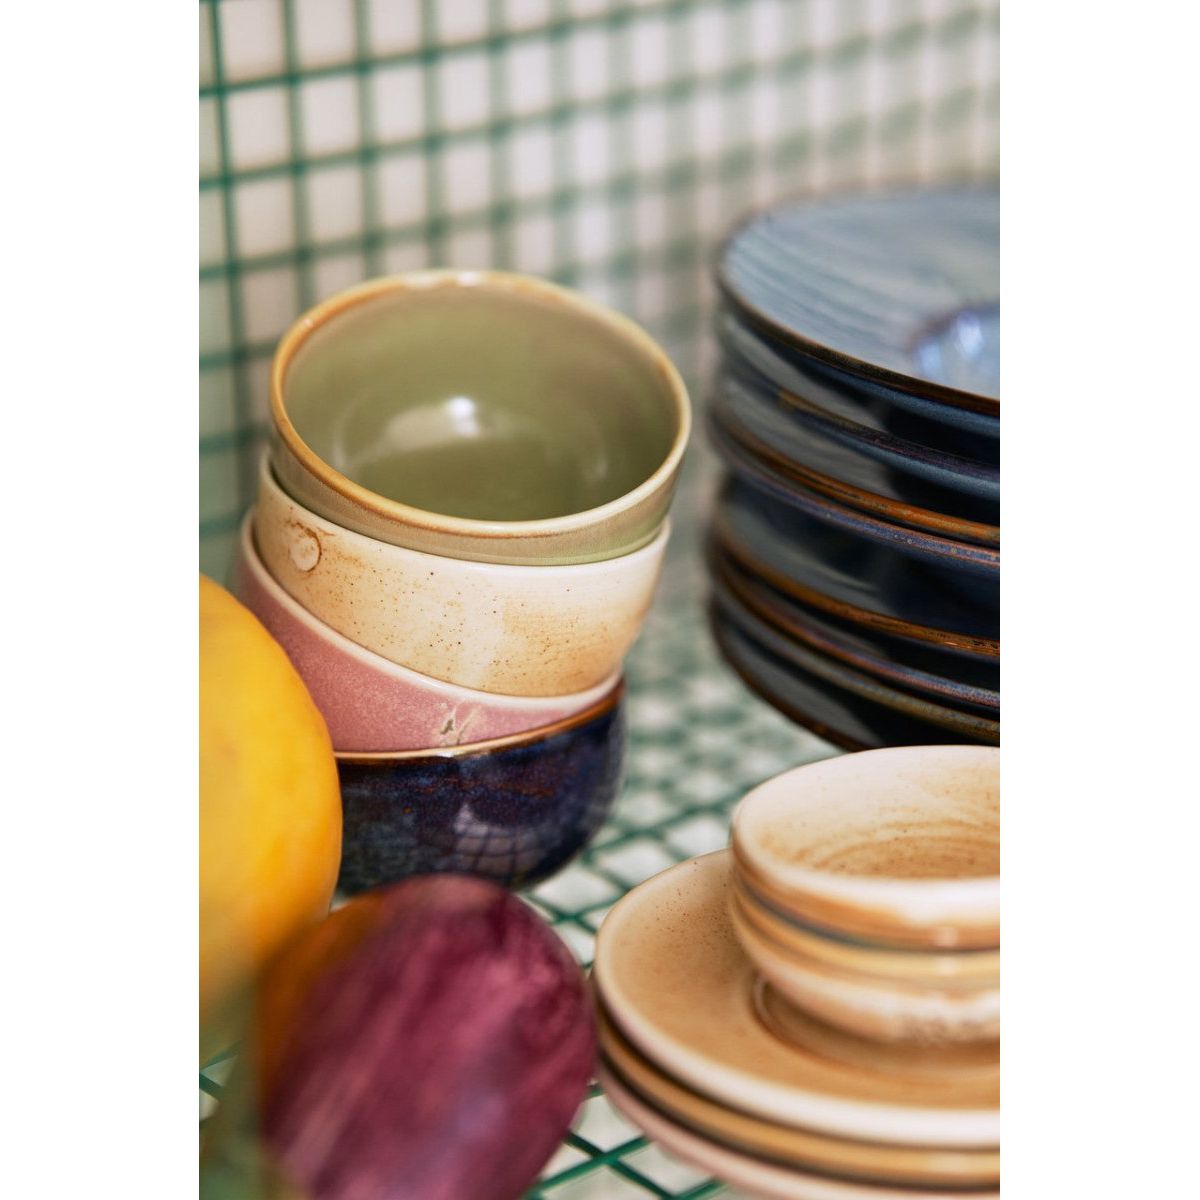 Chef ceramics: bowl, rustic blue - House of Orange